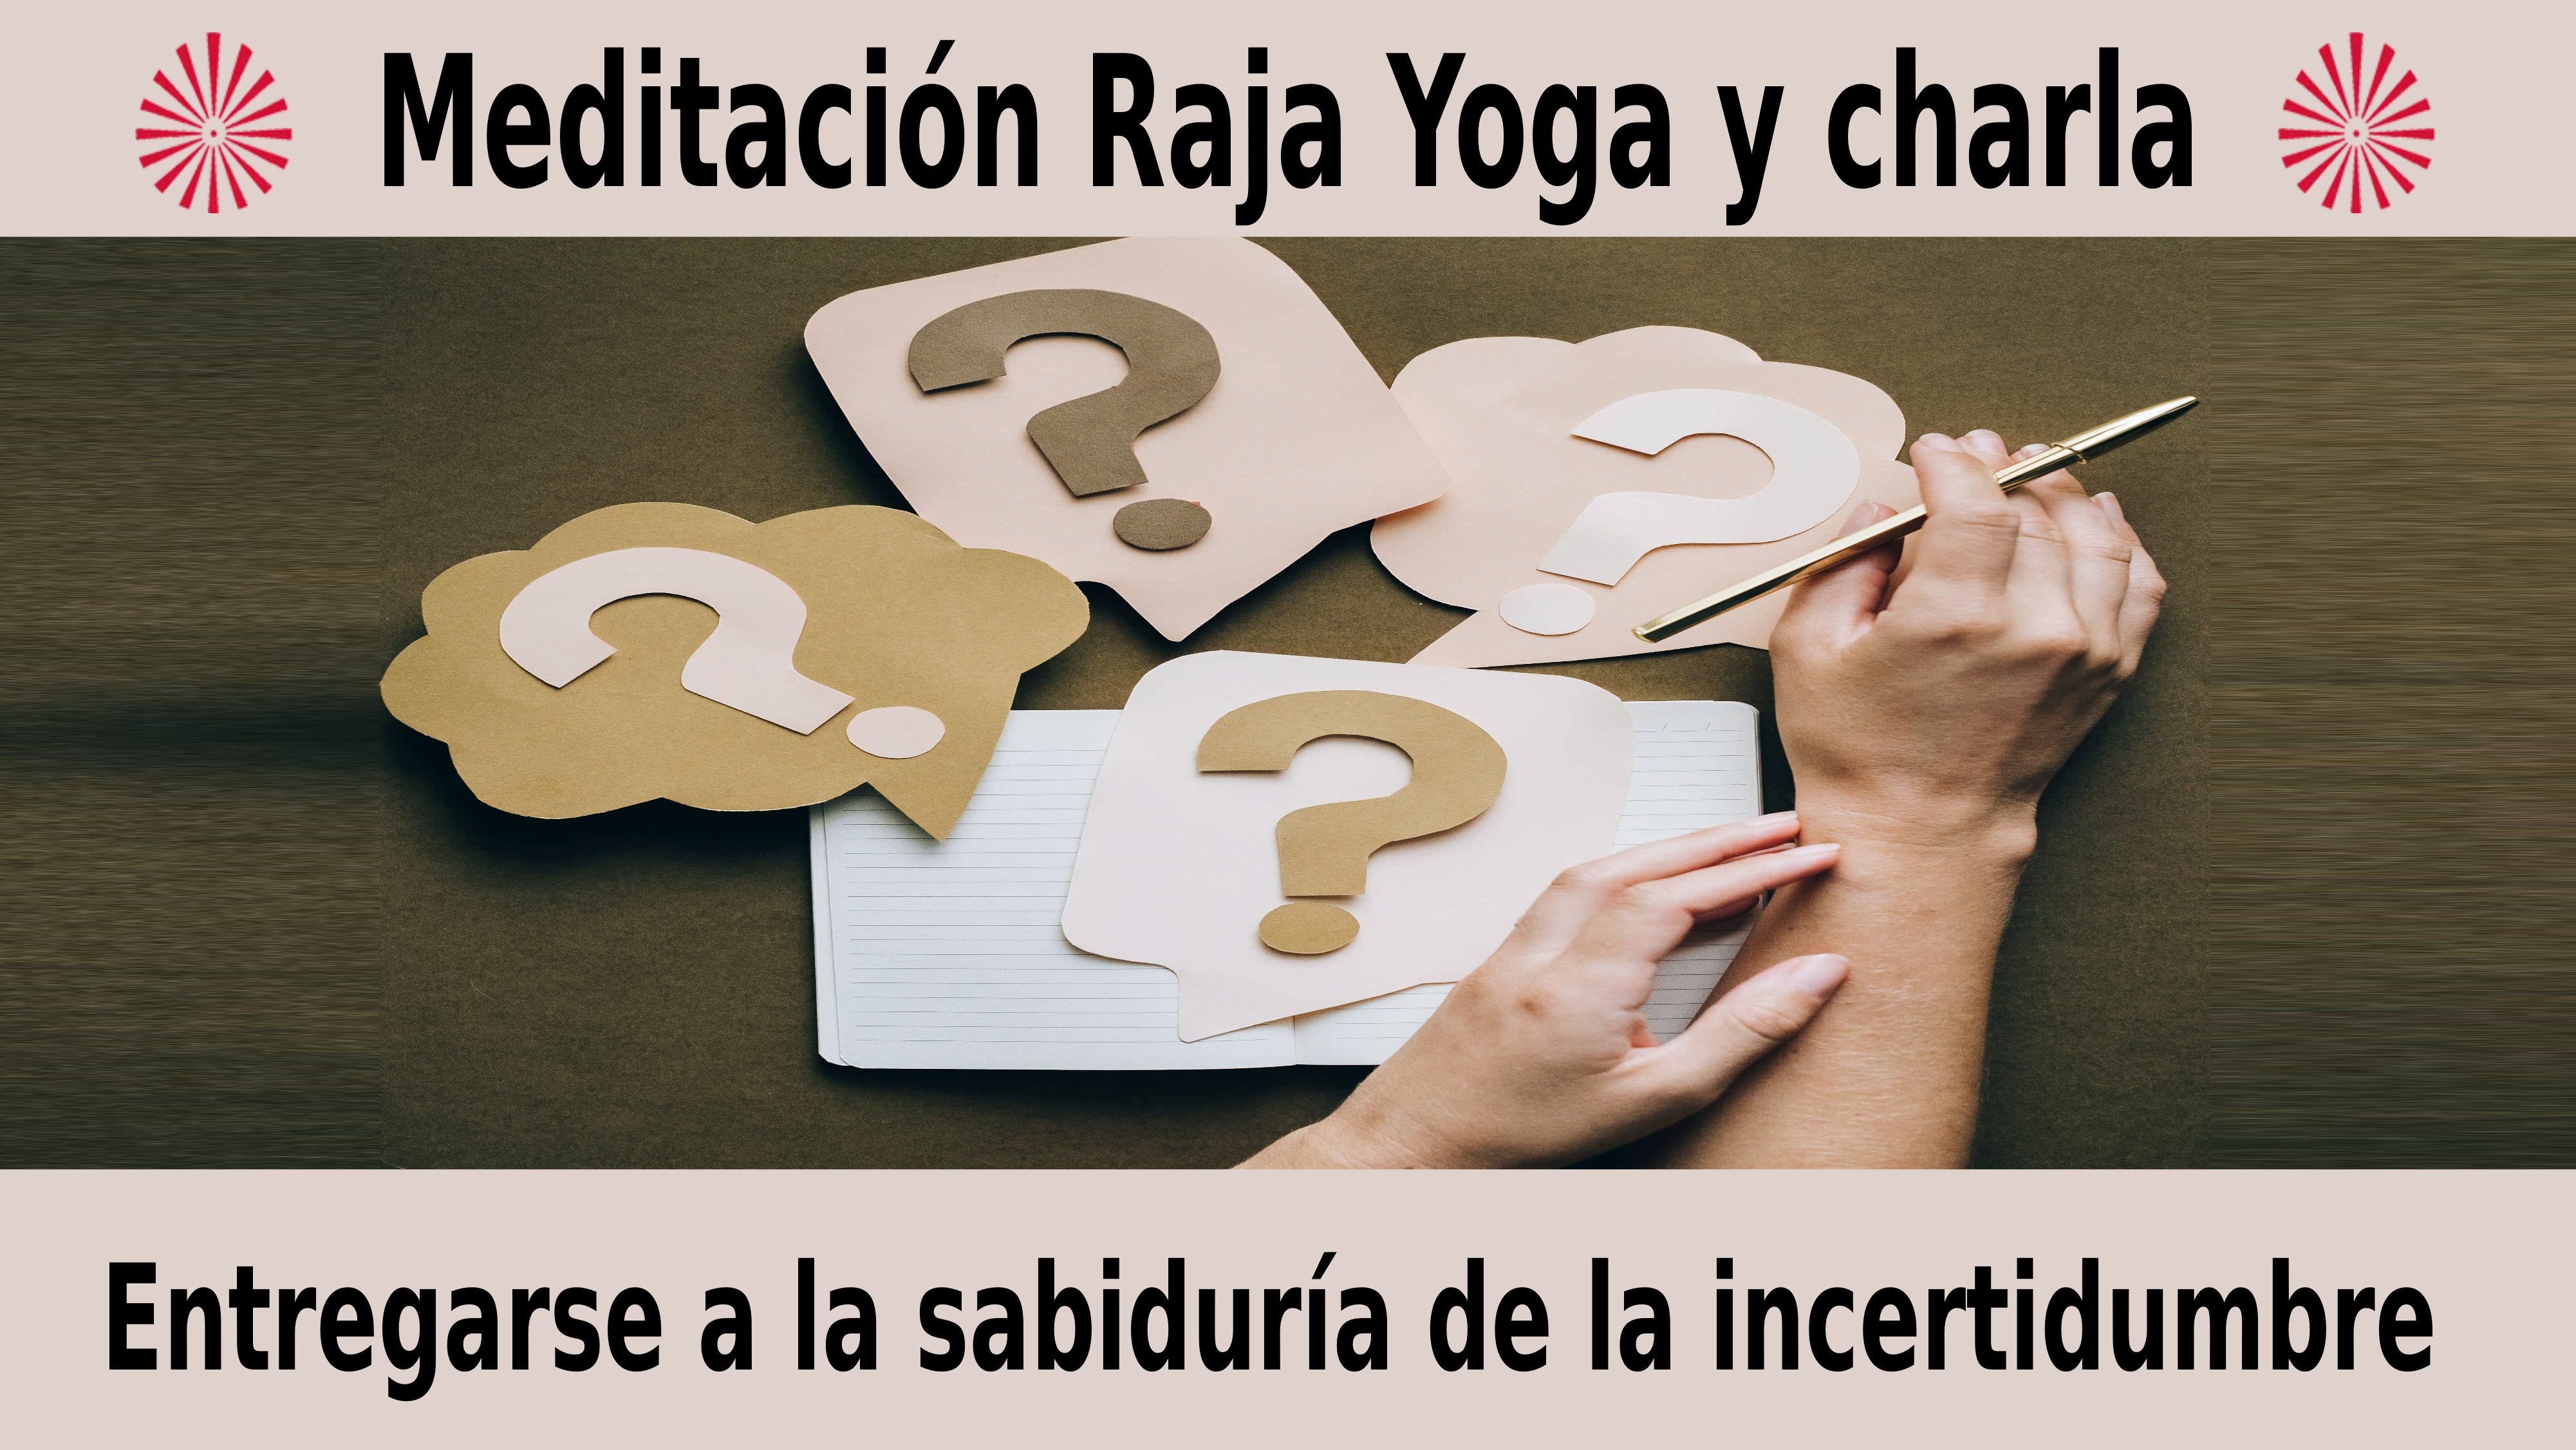 Meditación Raja Yoga y charla: Entregarse a la sabiduría de la incertidumbre (21 Diciembre 2020) On-line desde Madrid